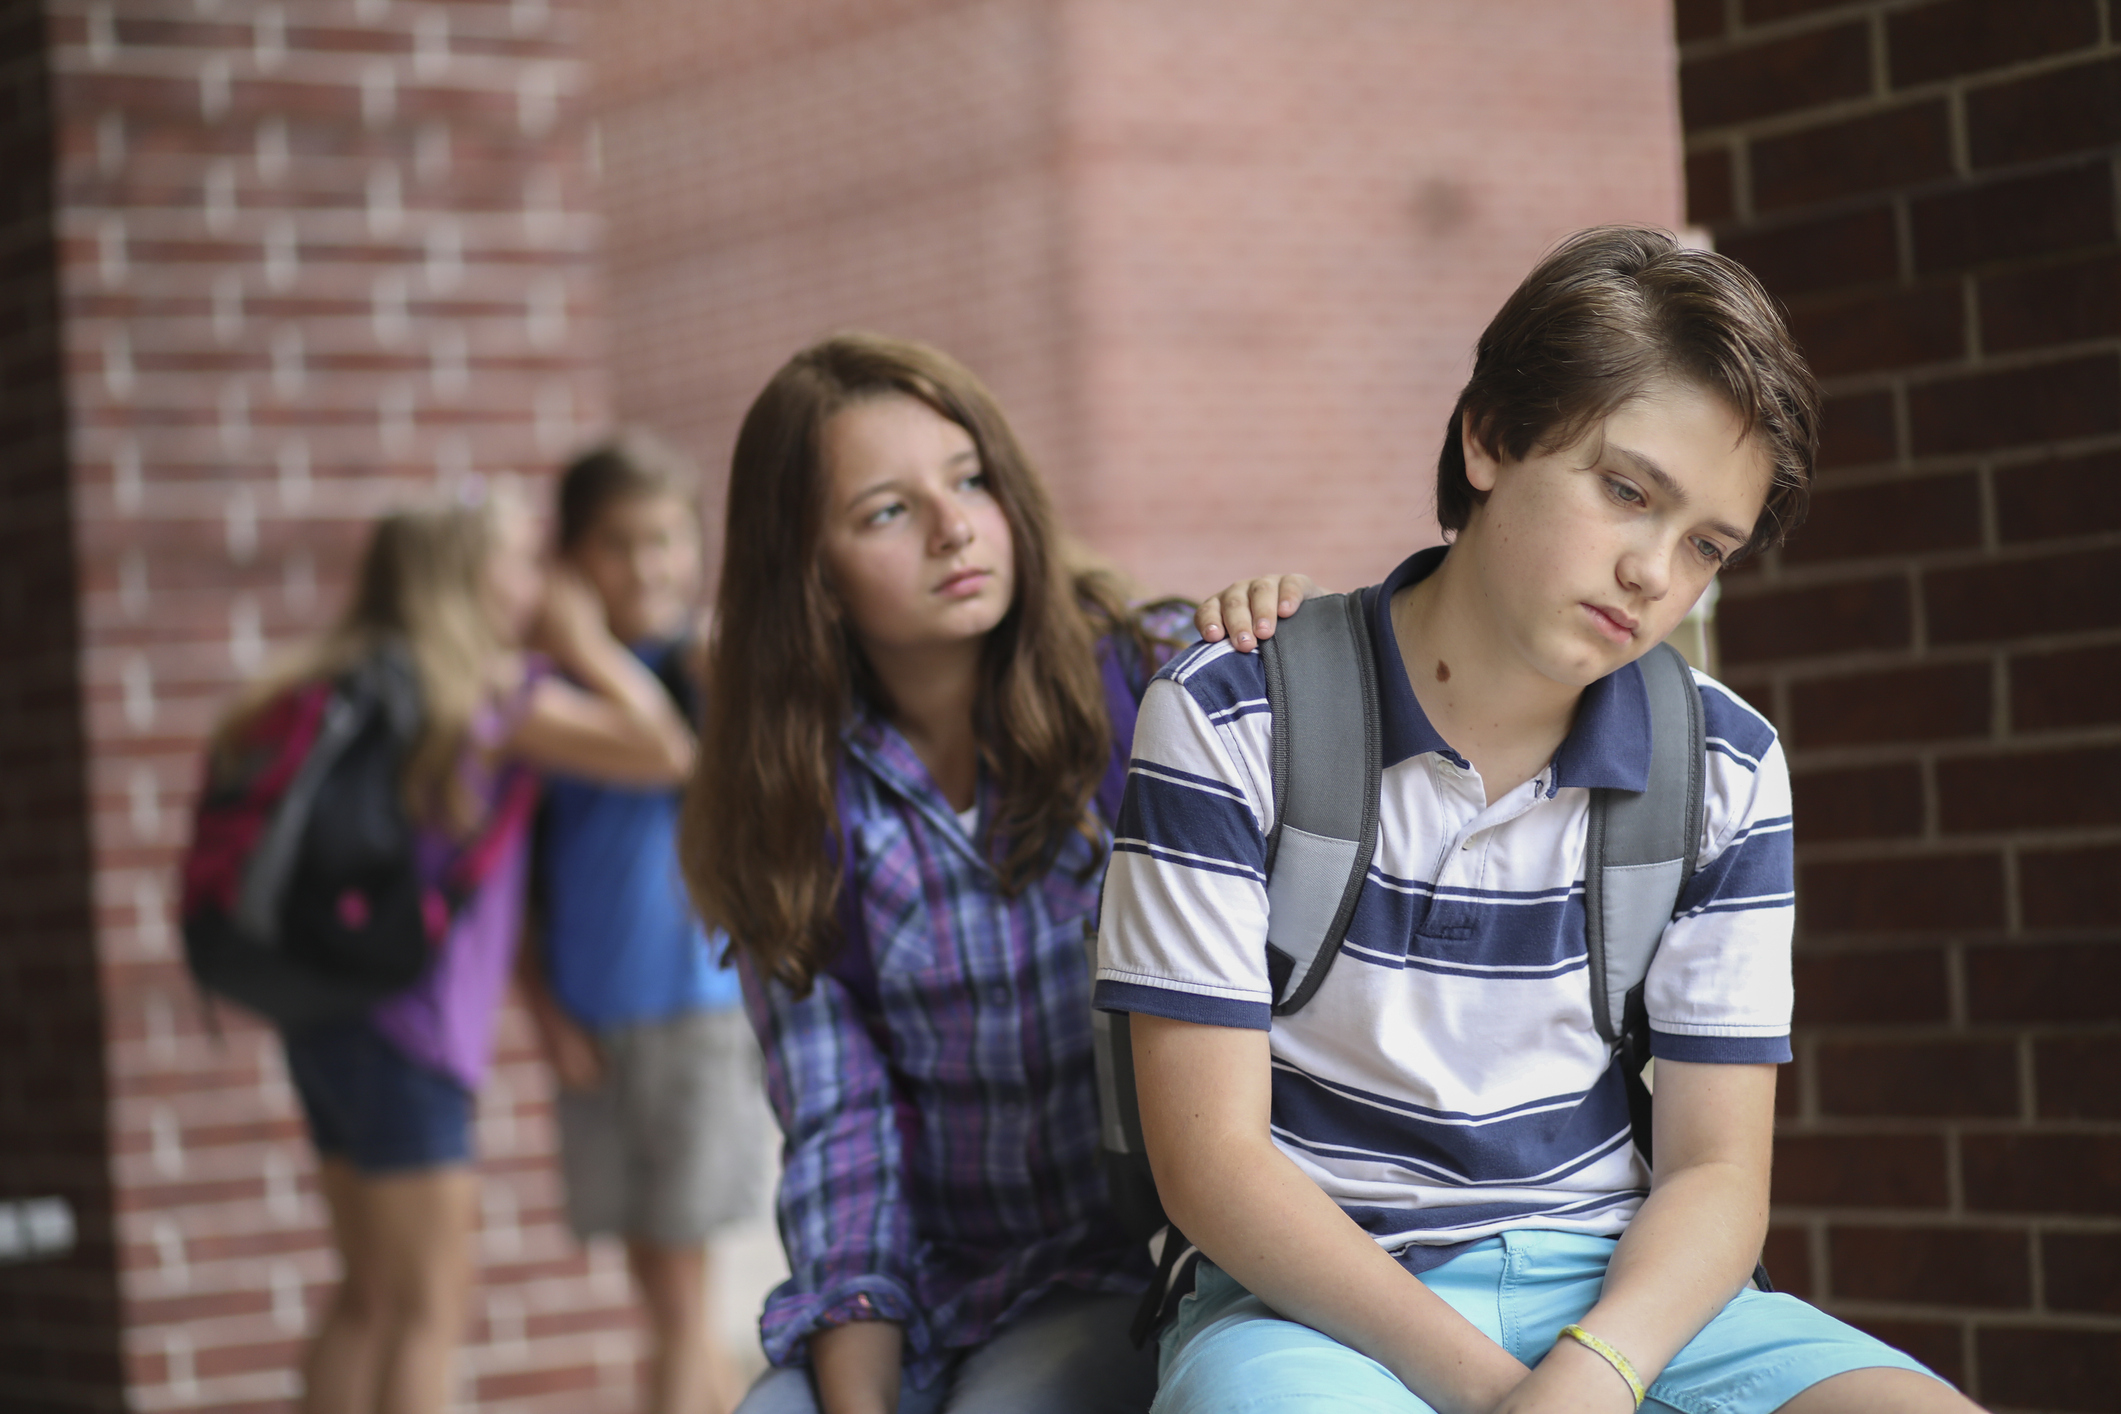 Bullying na escola: o que fazer? — Sei - Centro de Desenvolvimento e  Aprendizagem